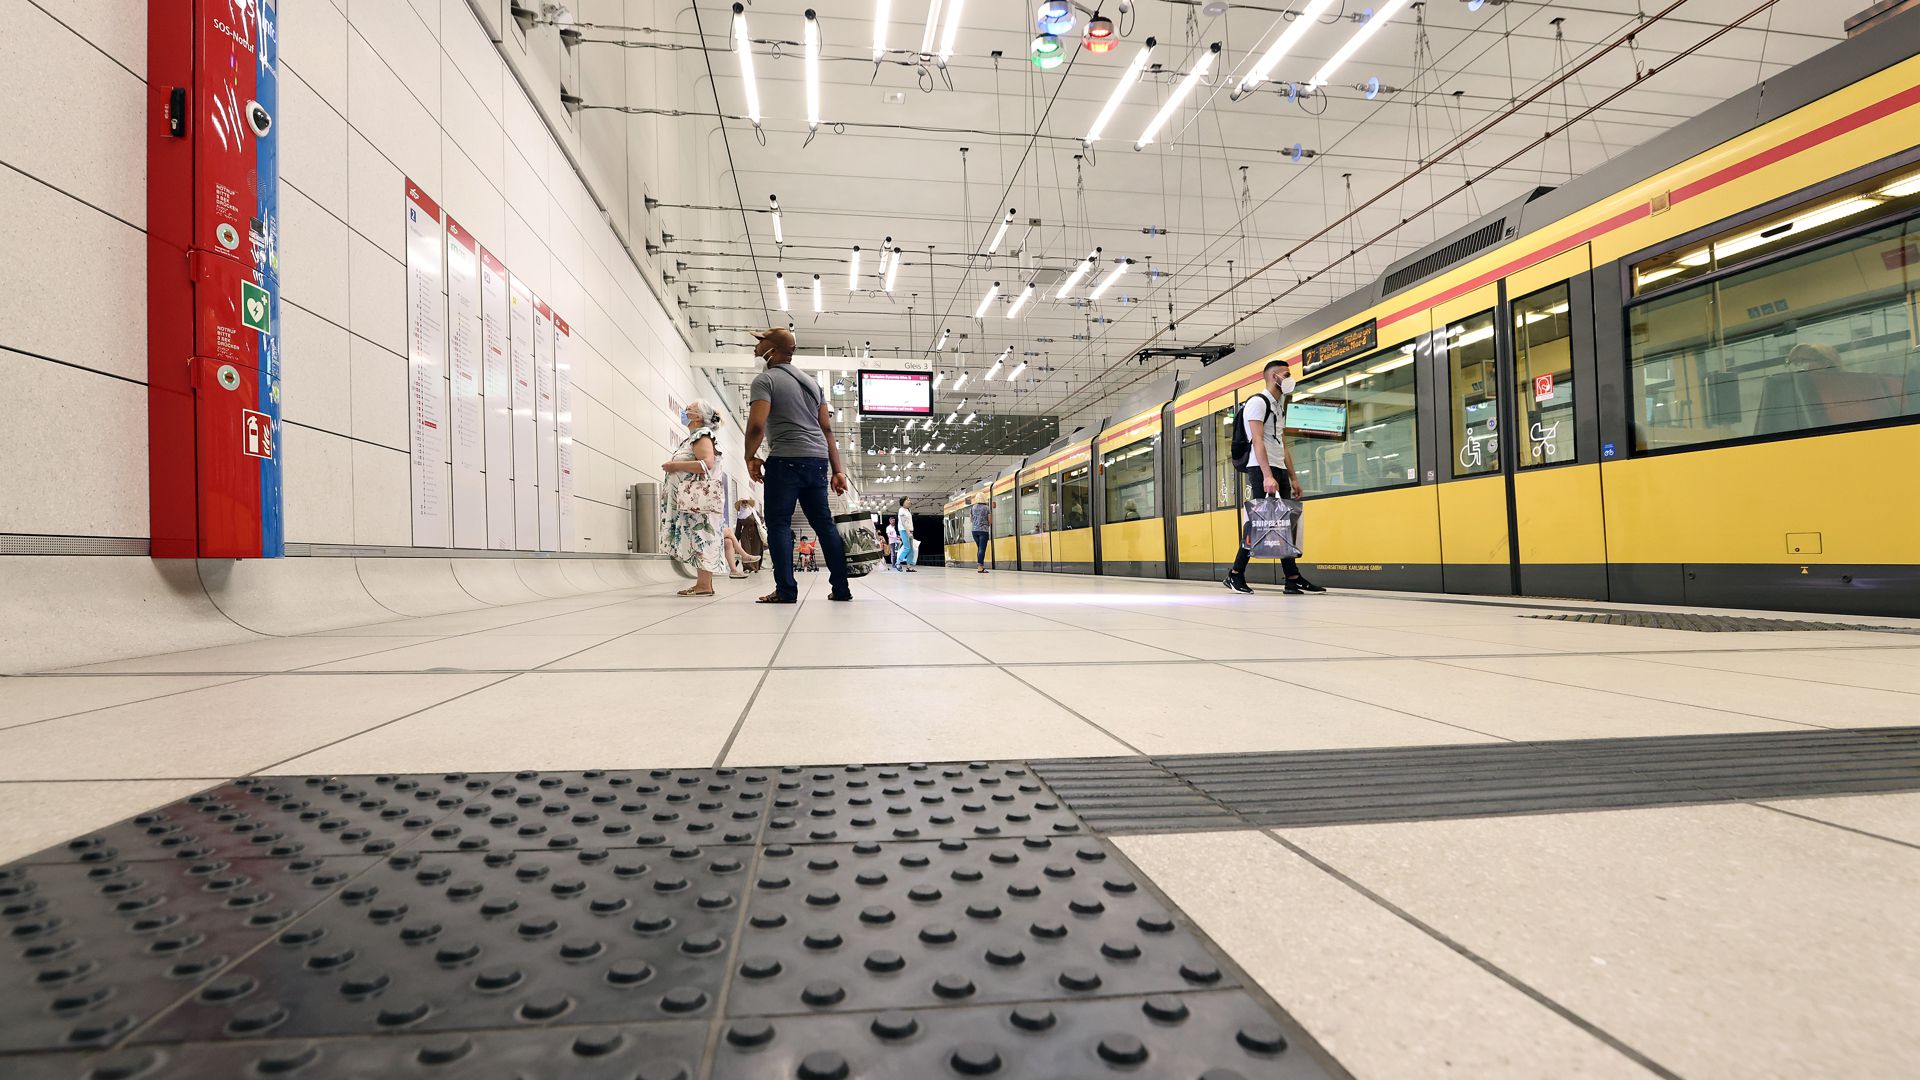 Am 19.07.2022 führt das Blindenleitsystem in der U-Strab an der Haltestelle Marktplatz nicht zur Informationssäule an der Wand.